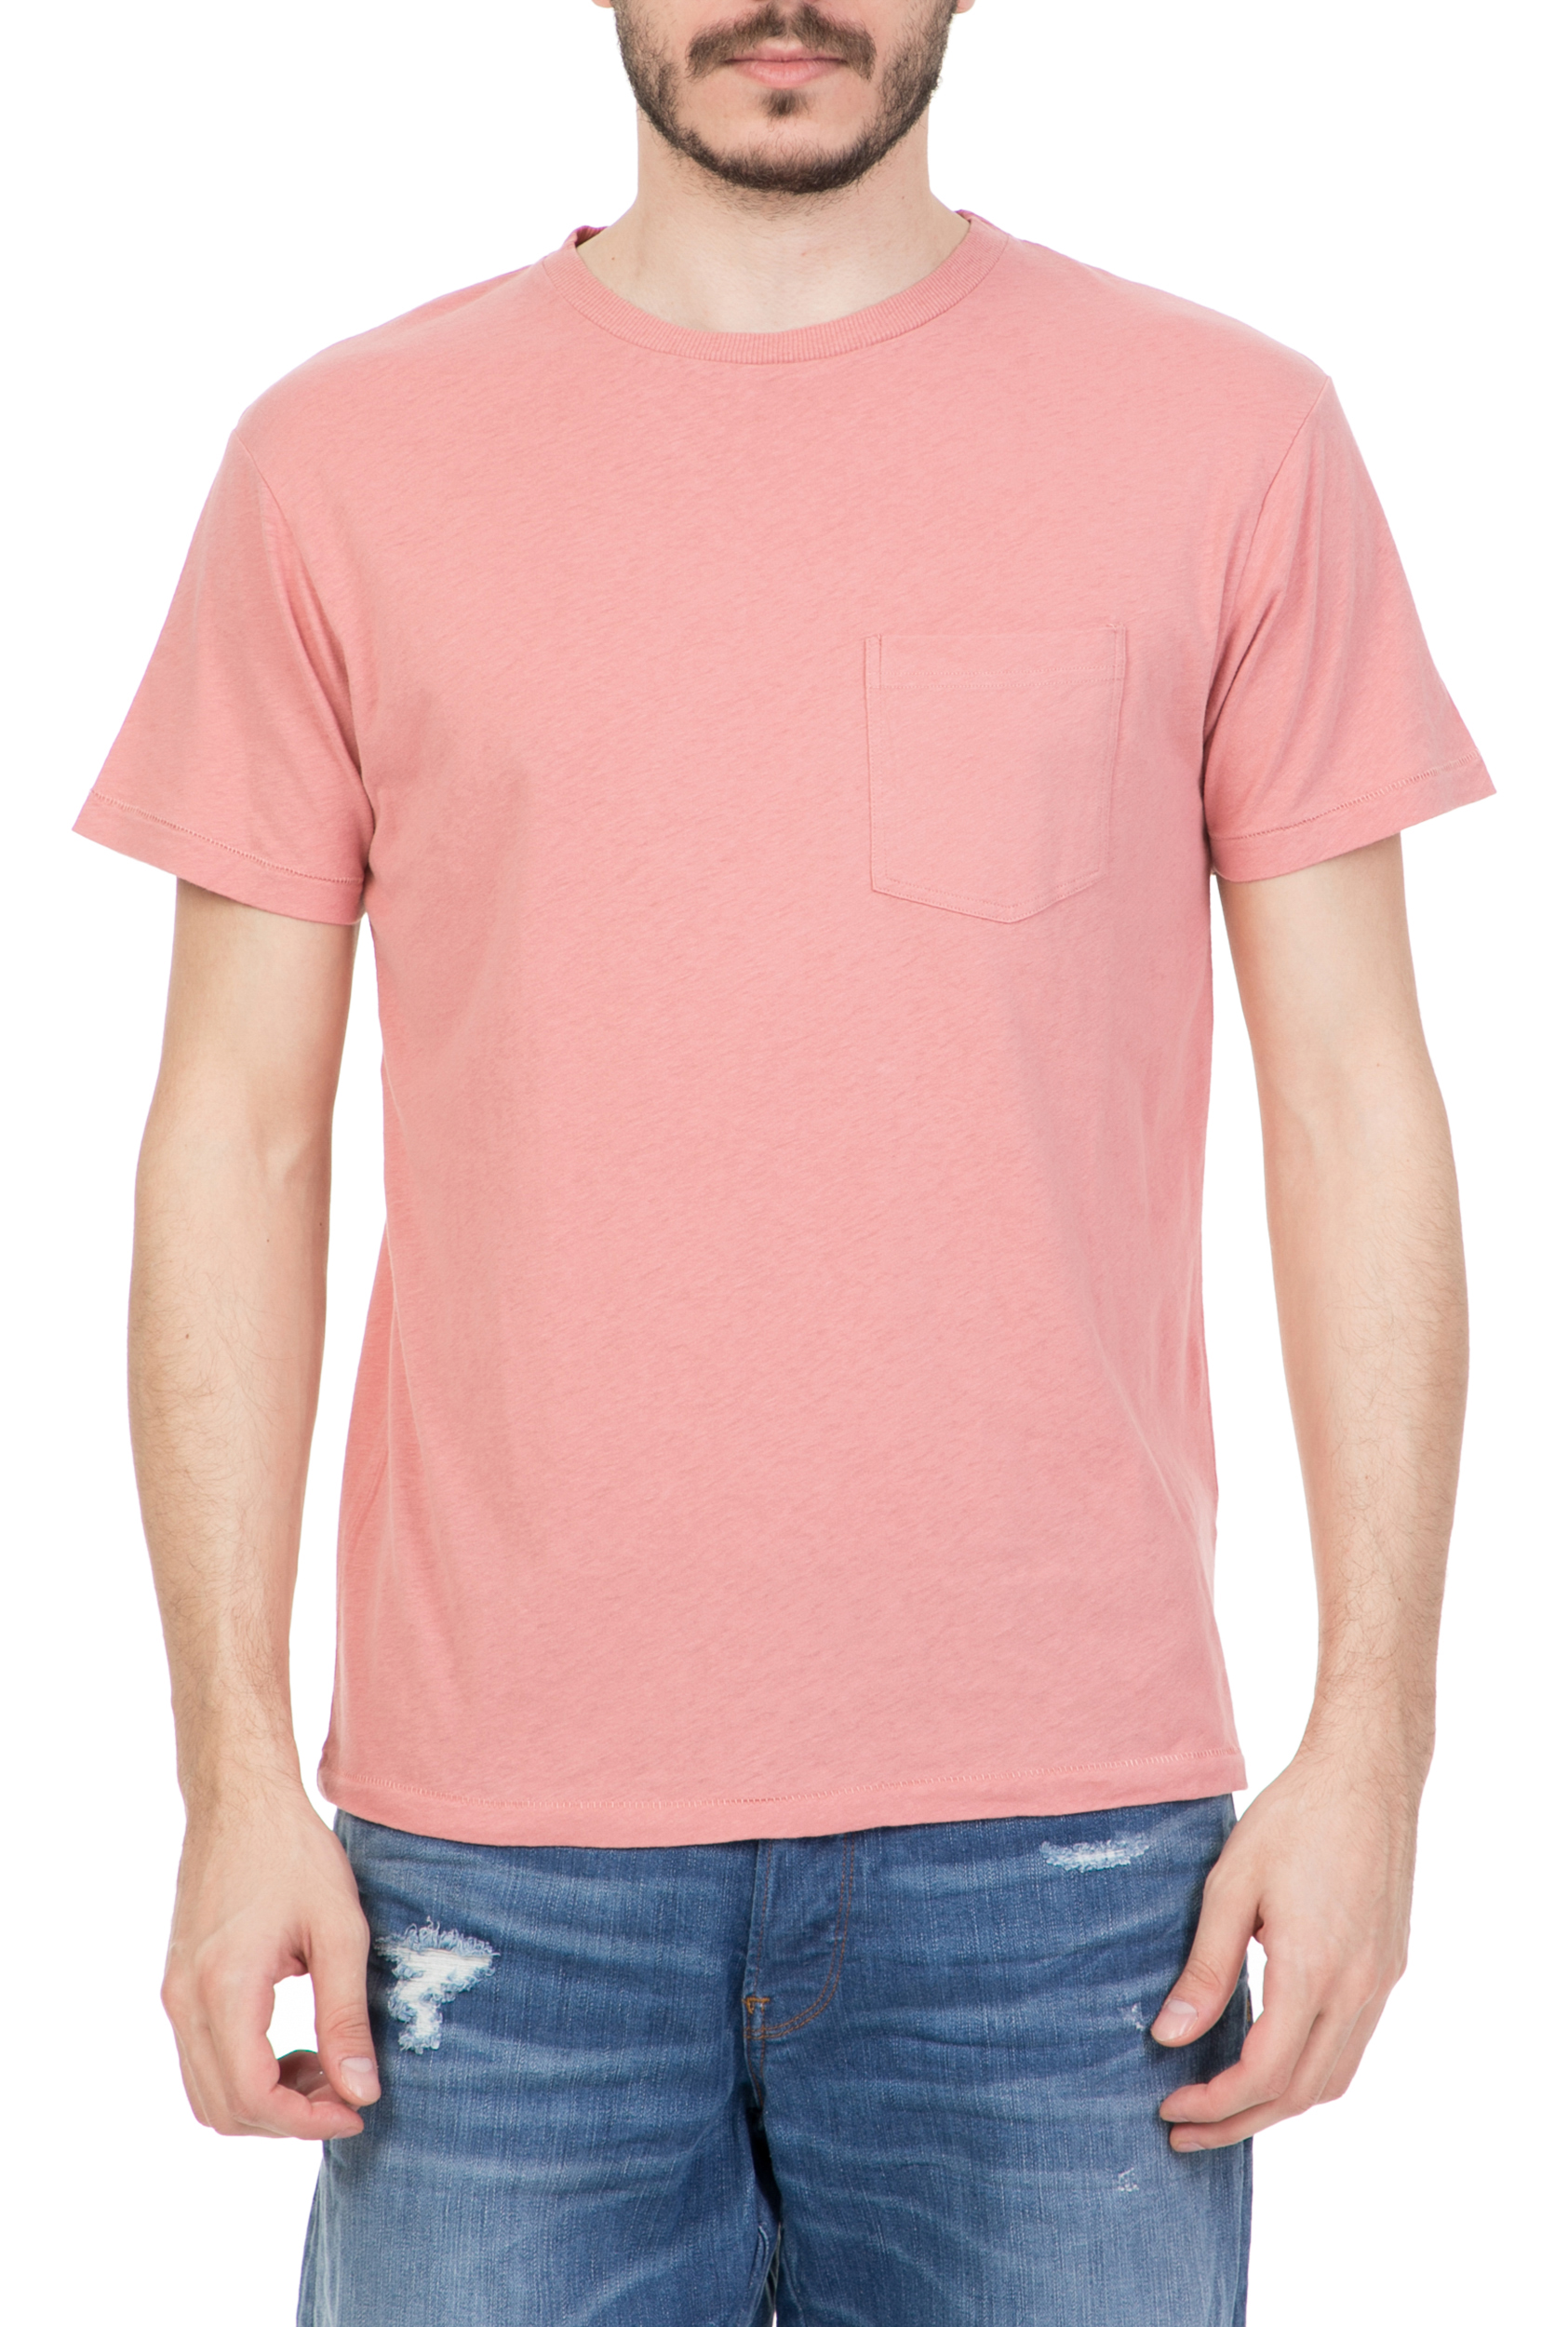 Ανδρικά/Ρούχα/Μπλούζες/Κοντομάνικες AMERICAN VINTAGE - Ανδρική κοντομάνικη μπλούζα AMERICAN VINTAGE ροζ